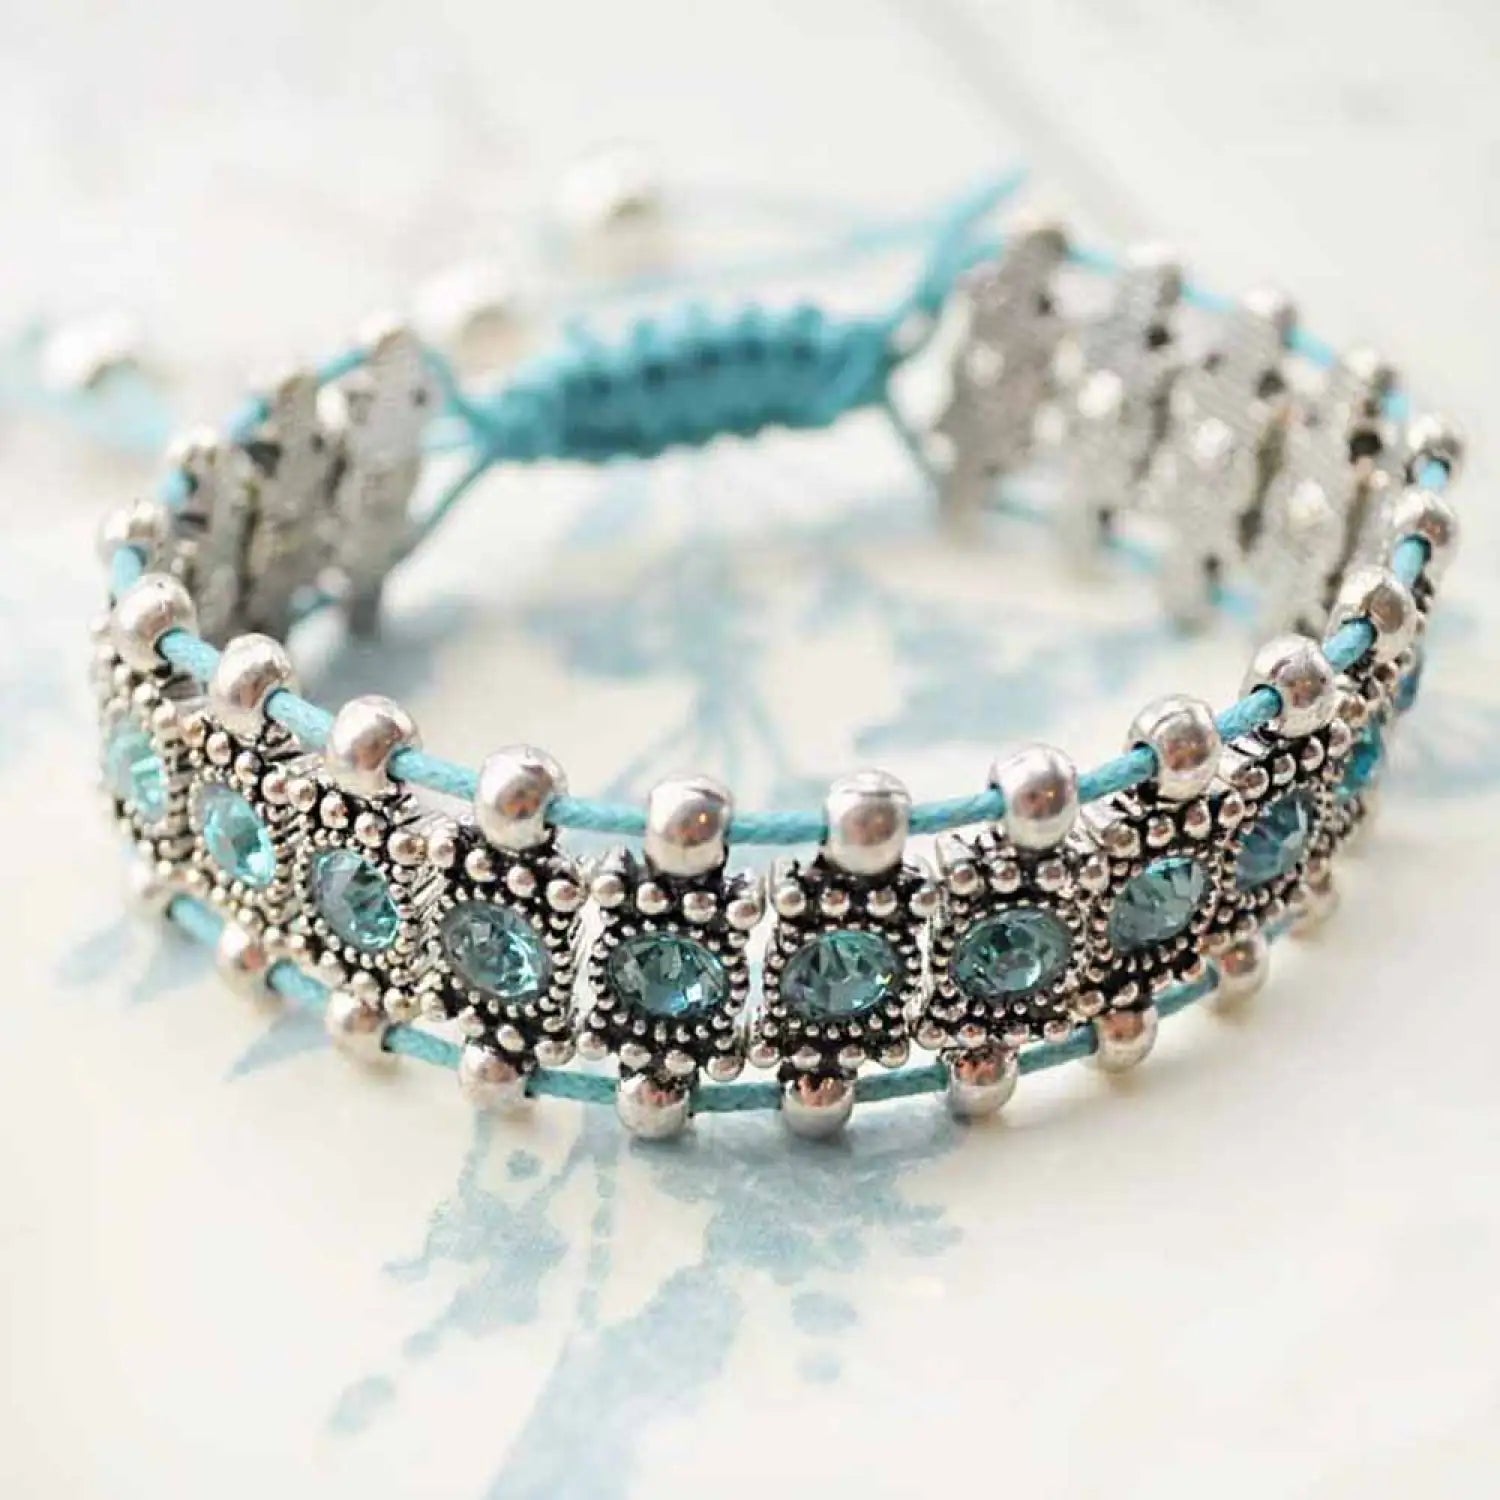 Boho rhinestone elastic bead bracelets with colorful beads